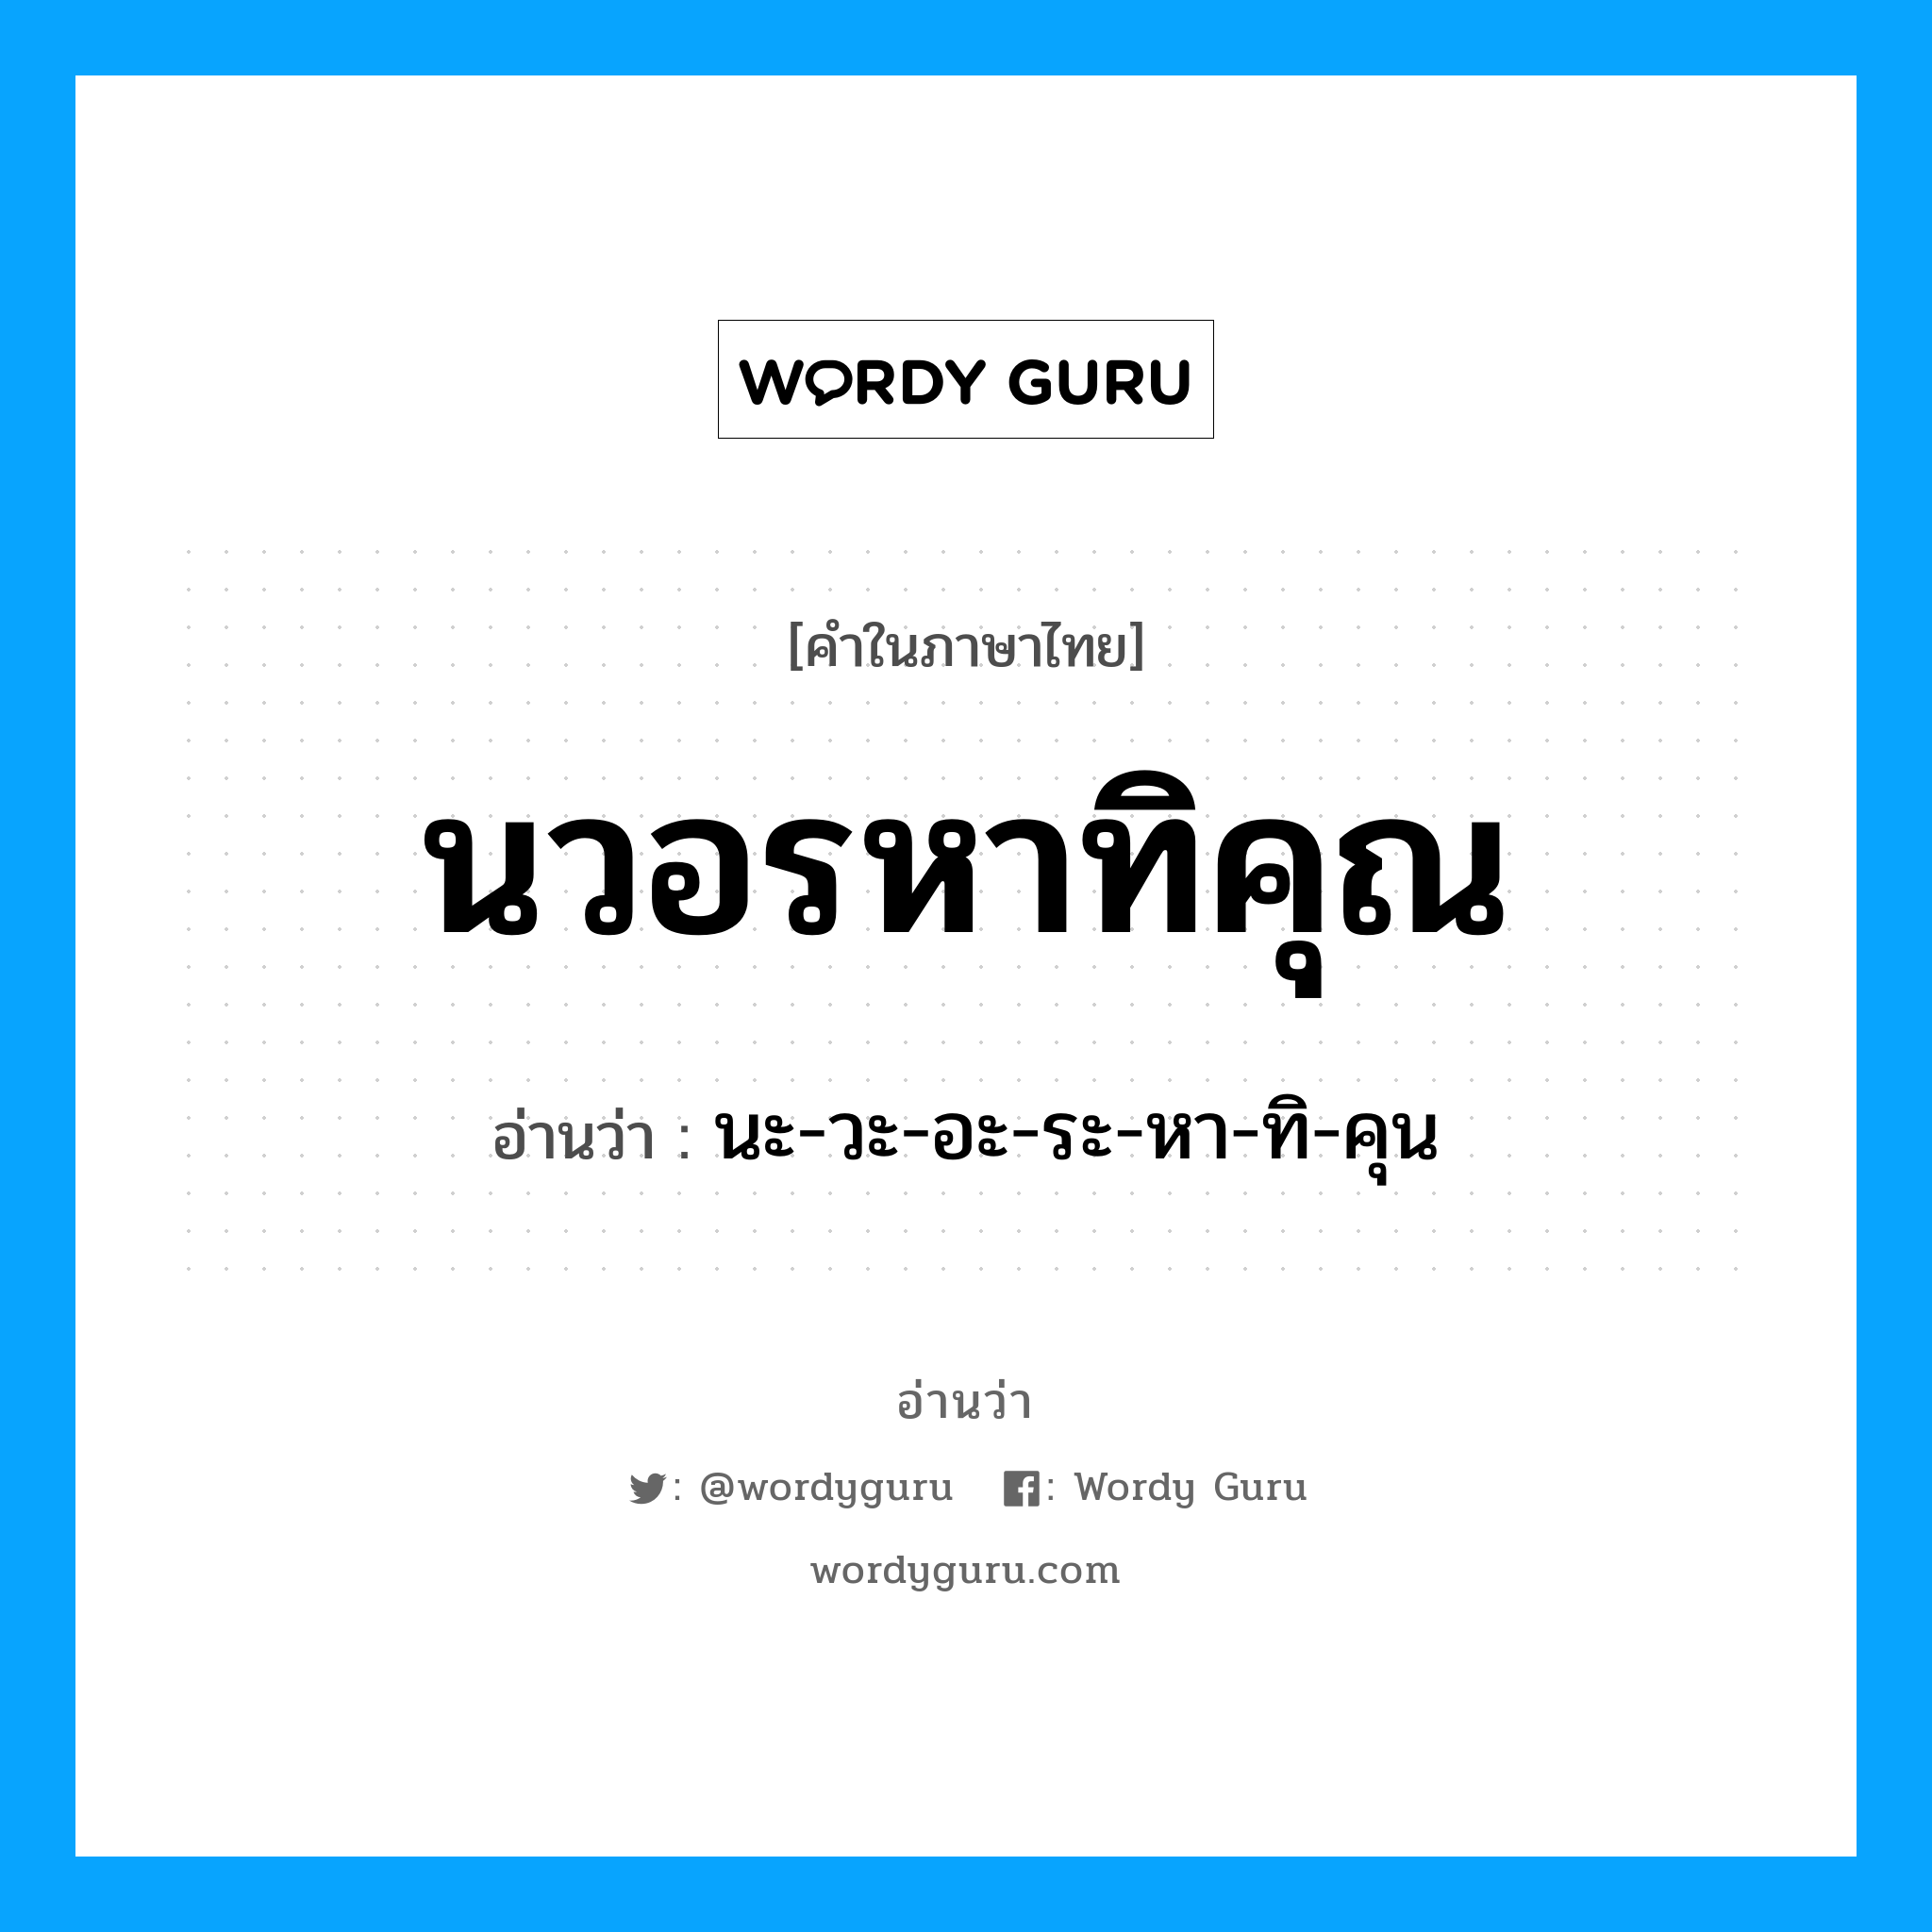 นวอรหาทิคุณ อ่านว่า?, คำในภาษาไทย นวอรหาทิคุณ อ่านว่า นะ-วะ-อะ-ระ-หา-ทิ-คุน